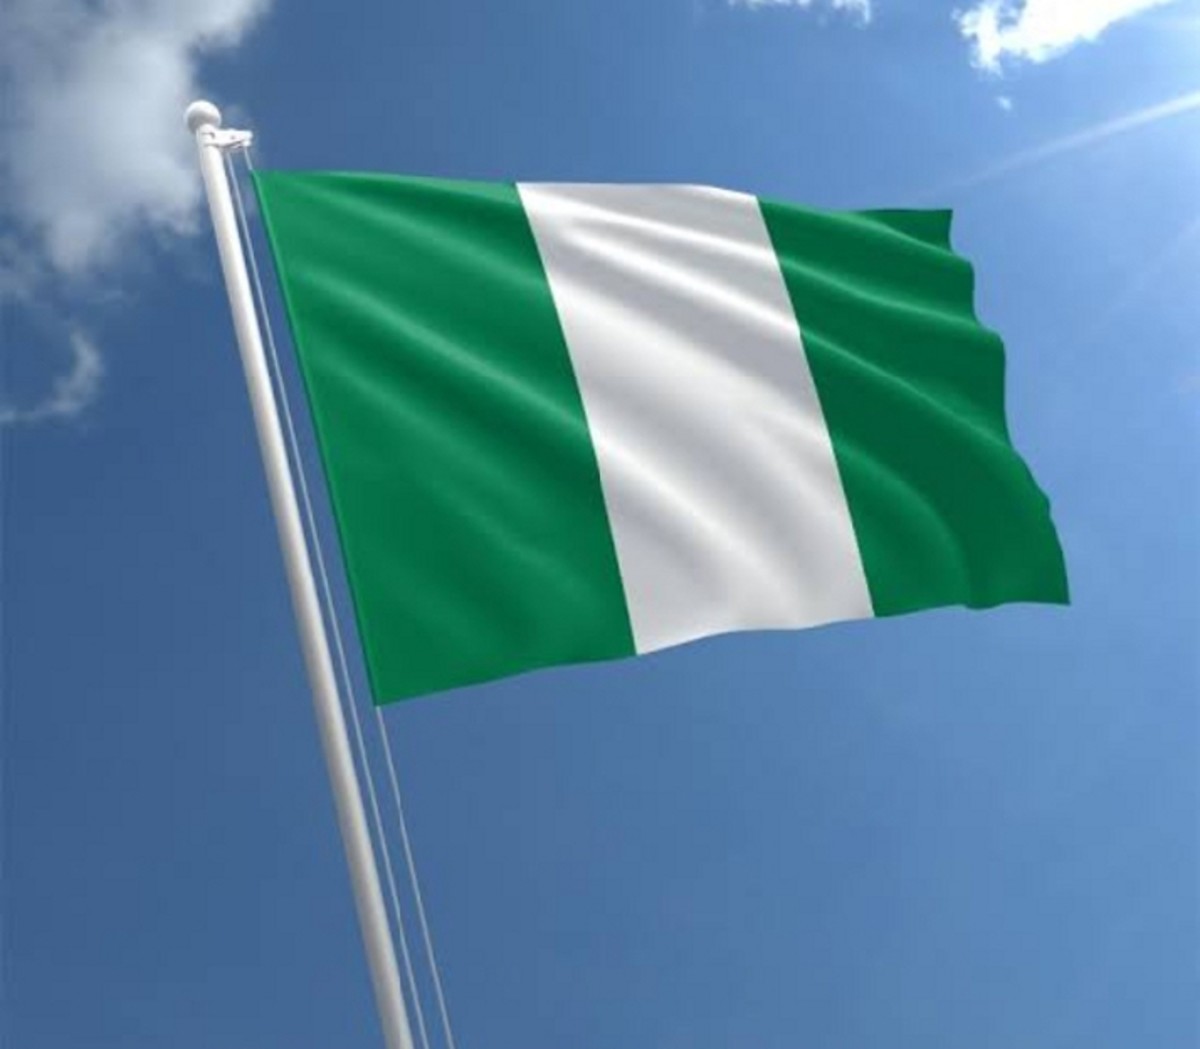 nigeria-decides